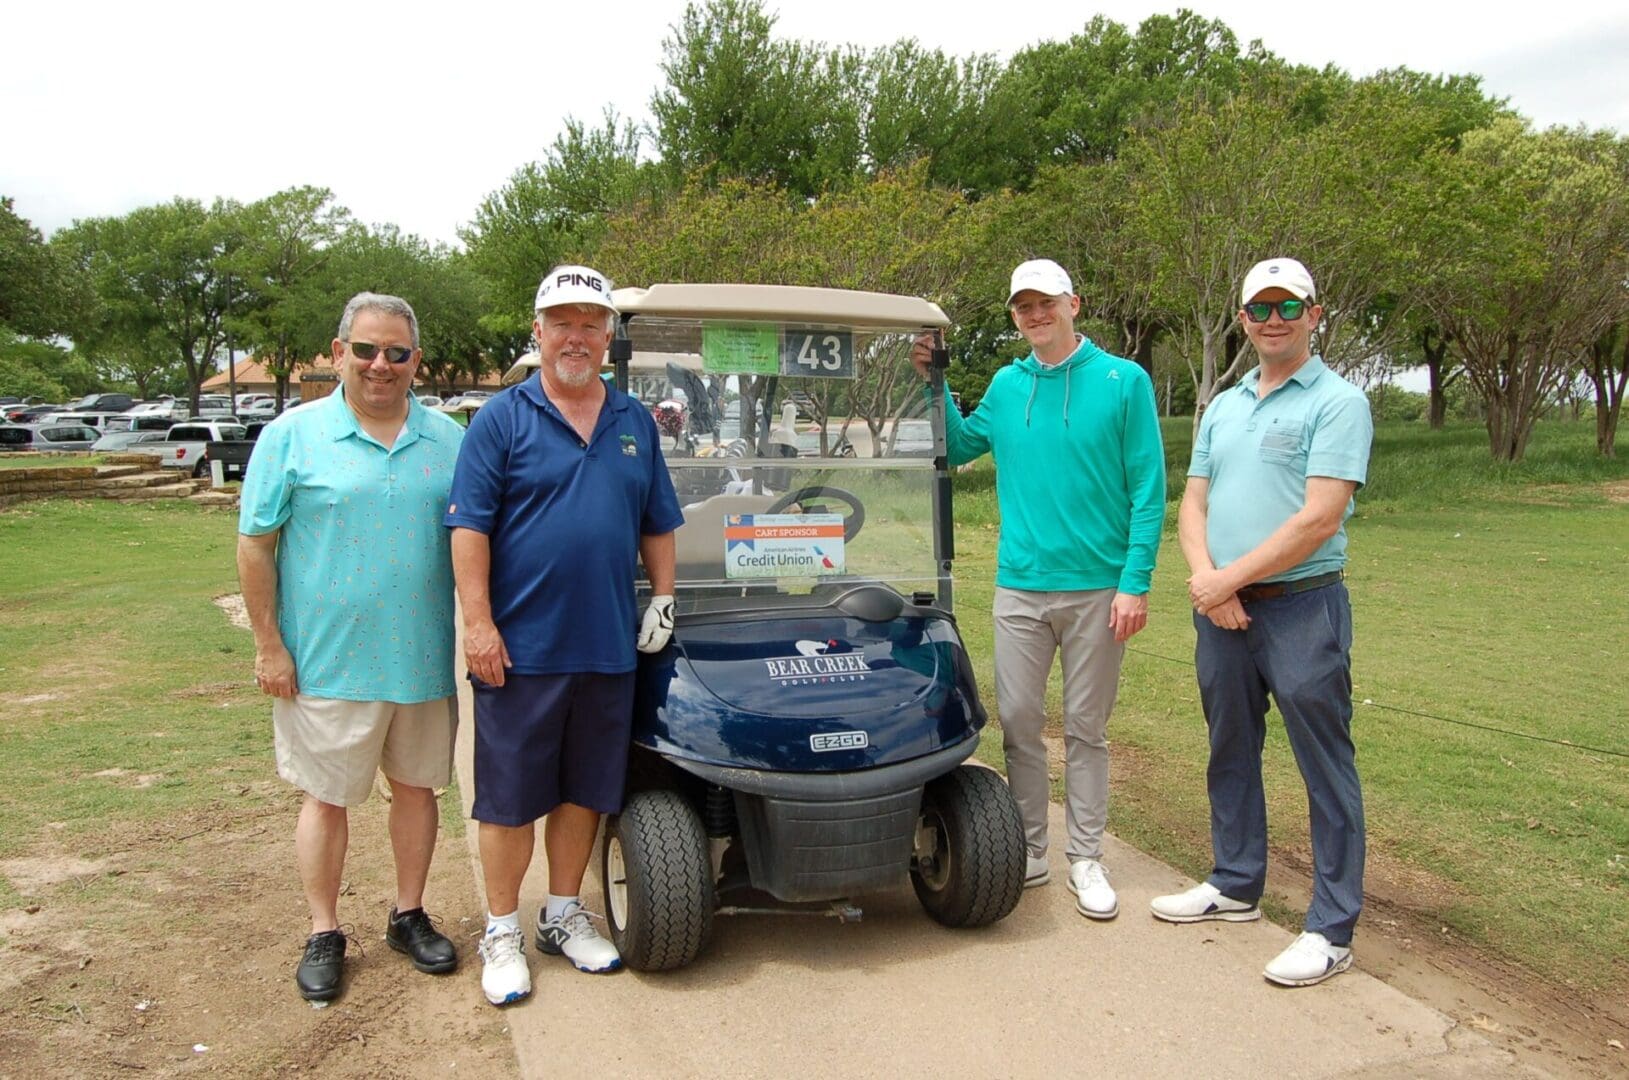 Four men standing next to a golf cart.